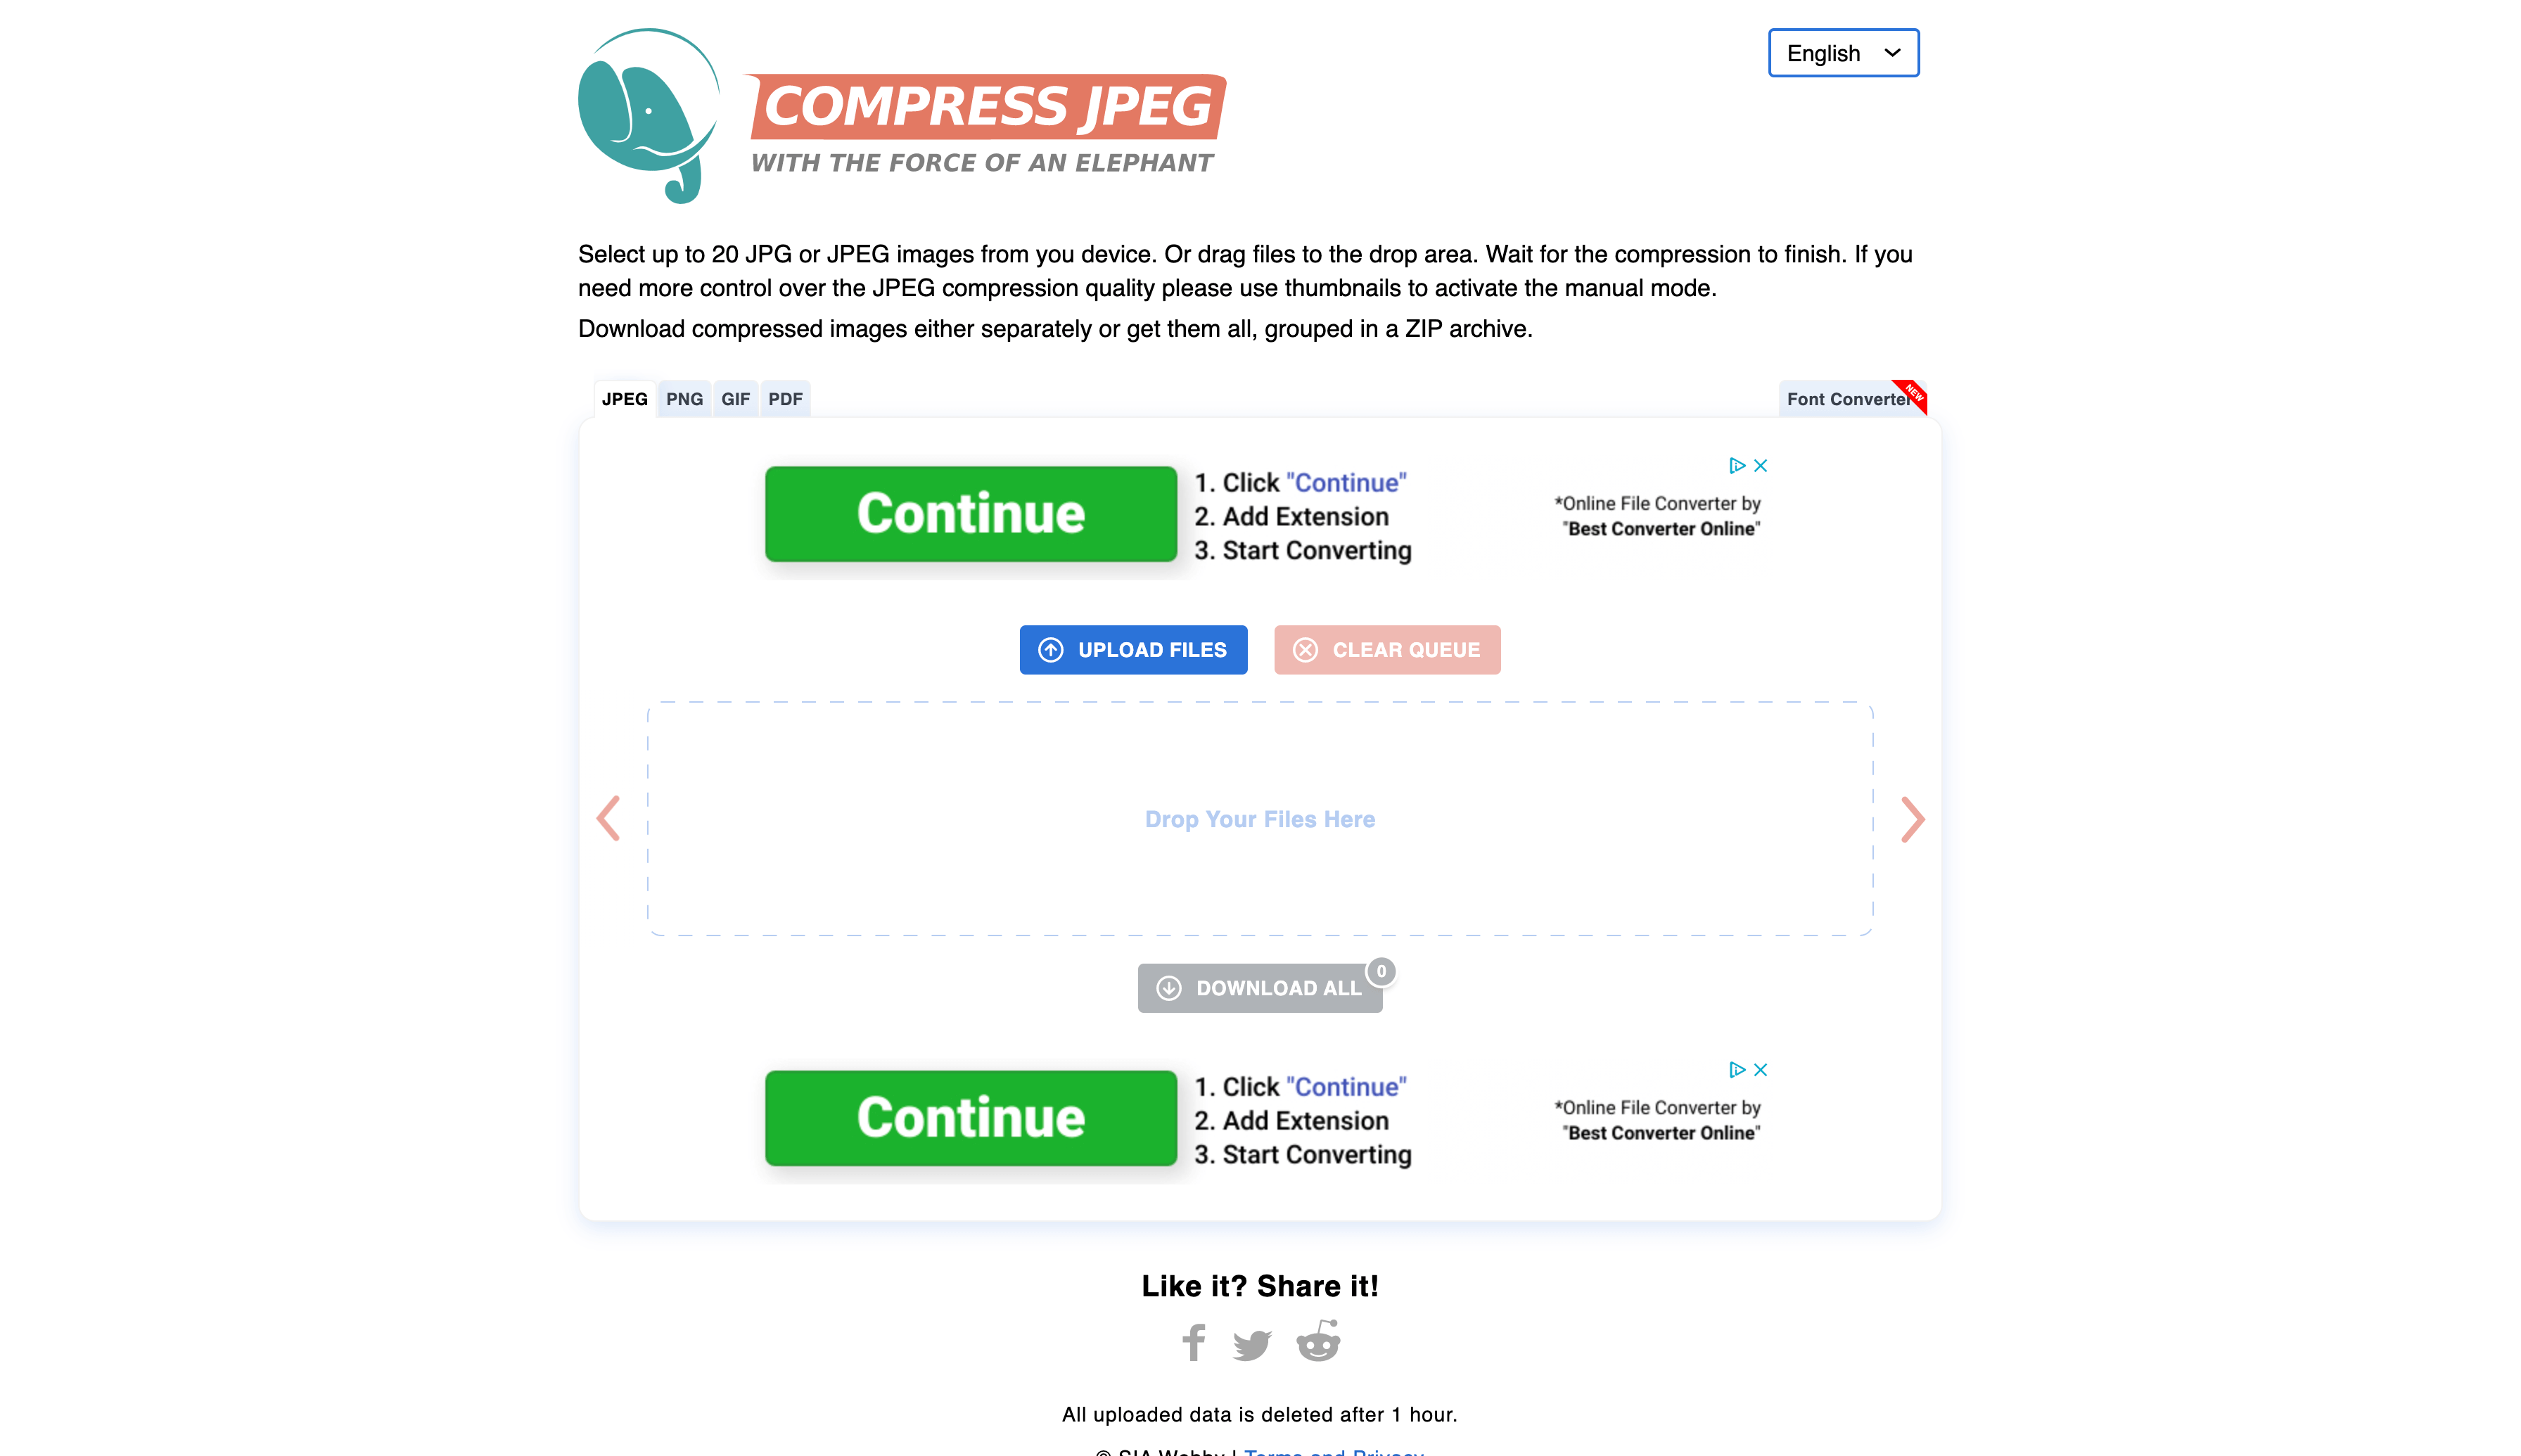 Compressjpg Homepage Screenshot (Compressing Your Blog Images)